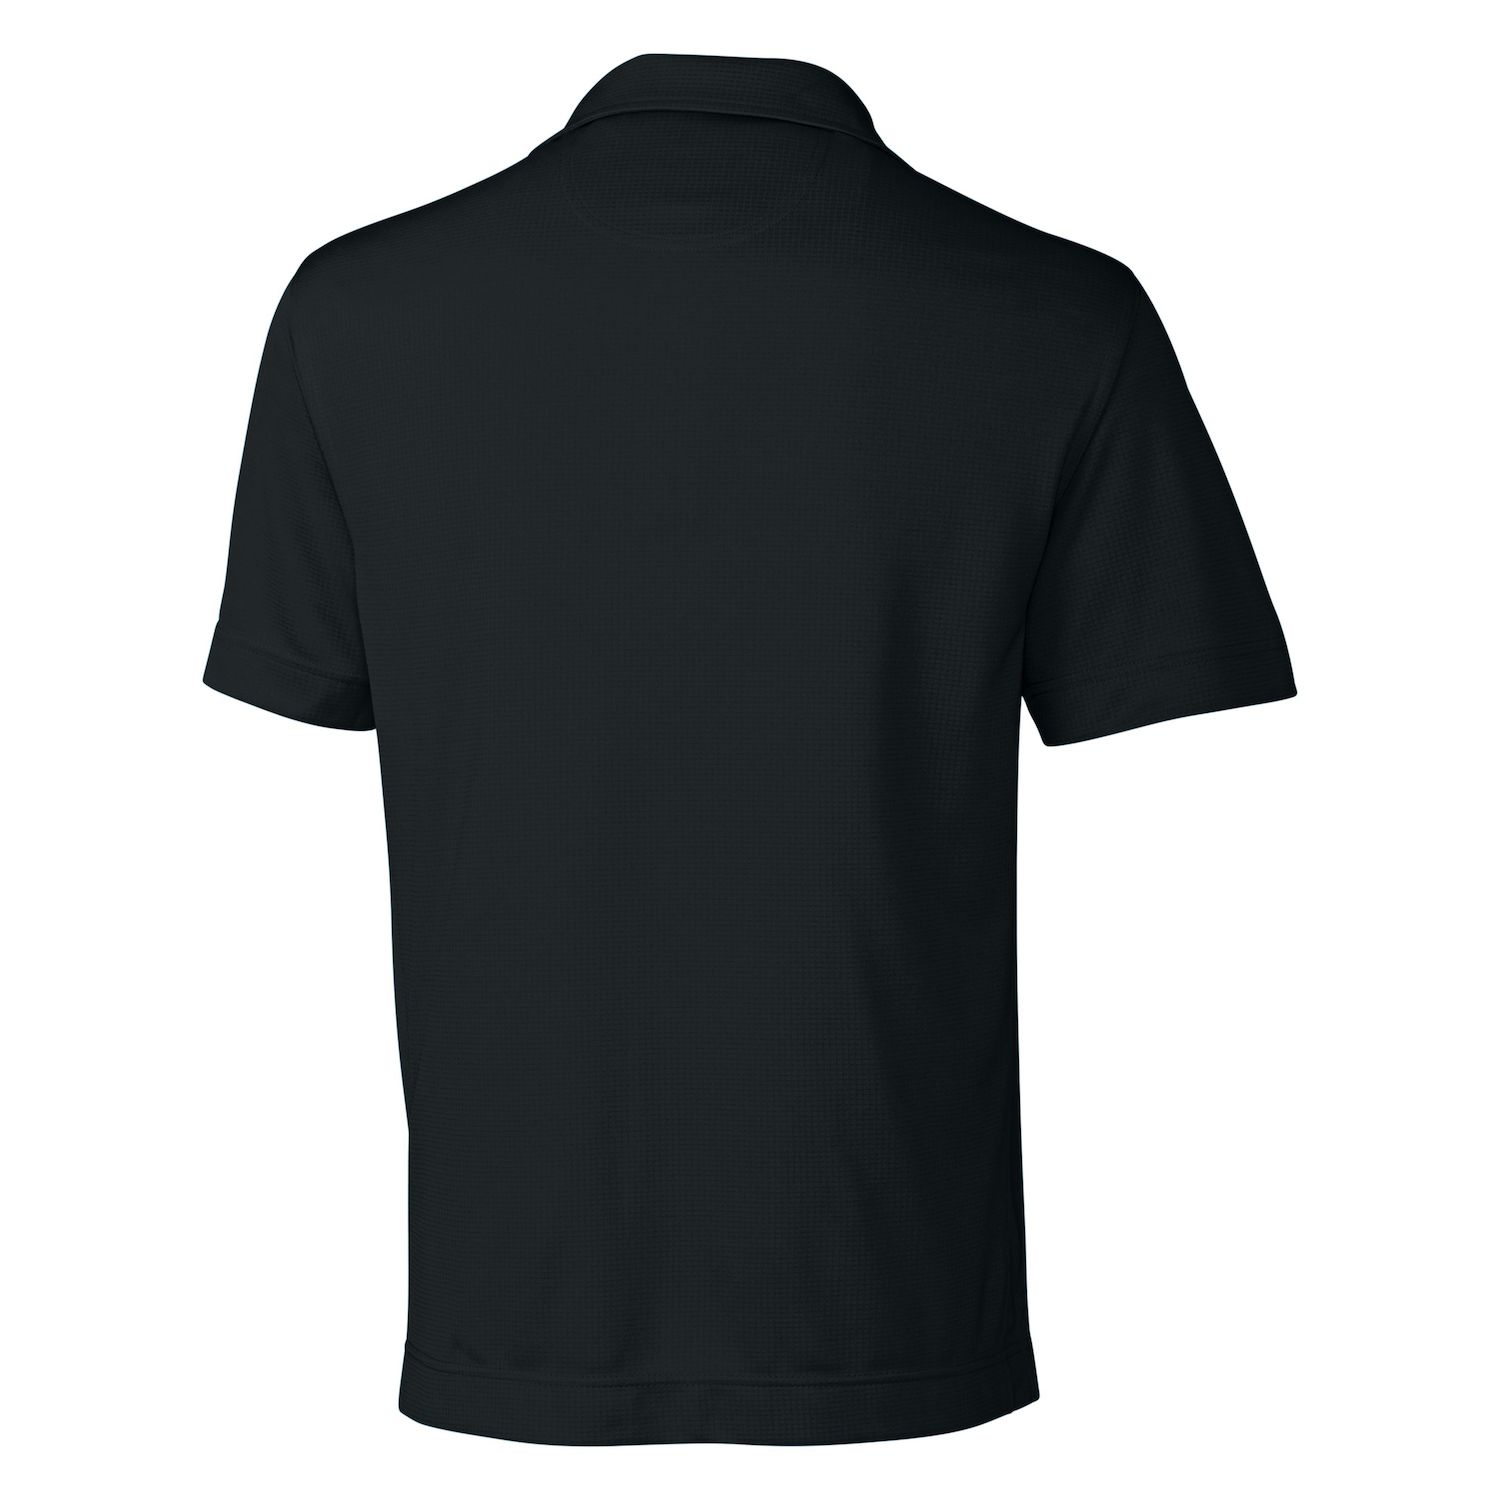 Текстурированная однотонная мужская футболка-поло CB Drytec Genre Cutter & Buck текстурированная однотонная мужская футболка поло cb drytec genre cutter